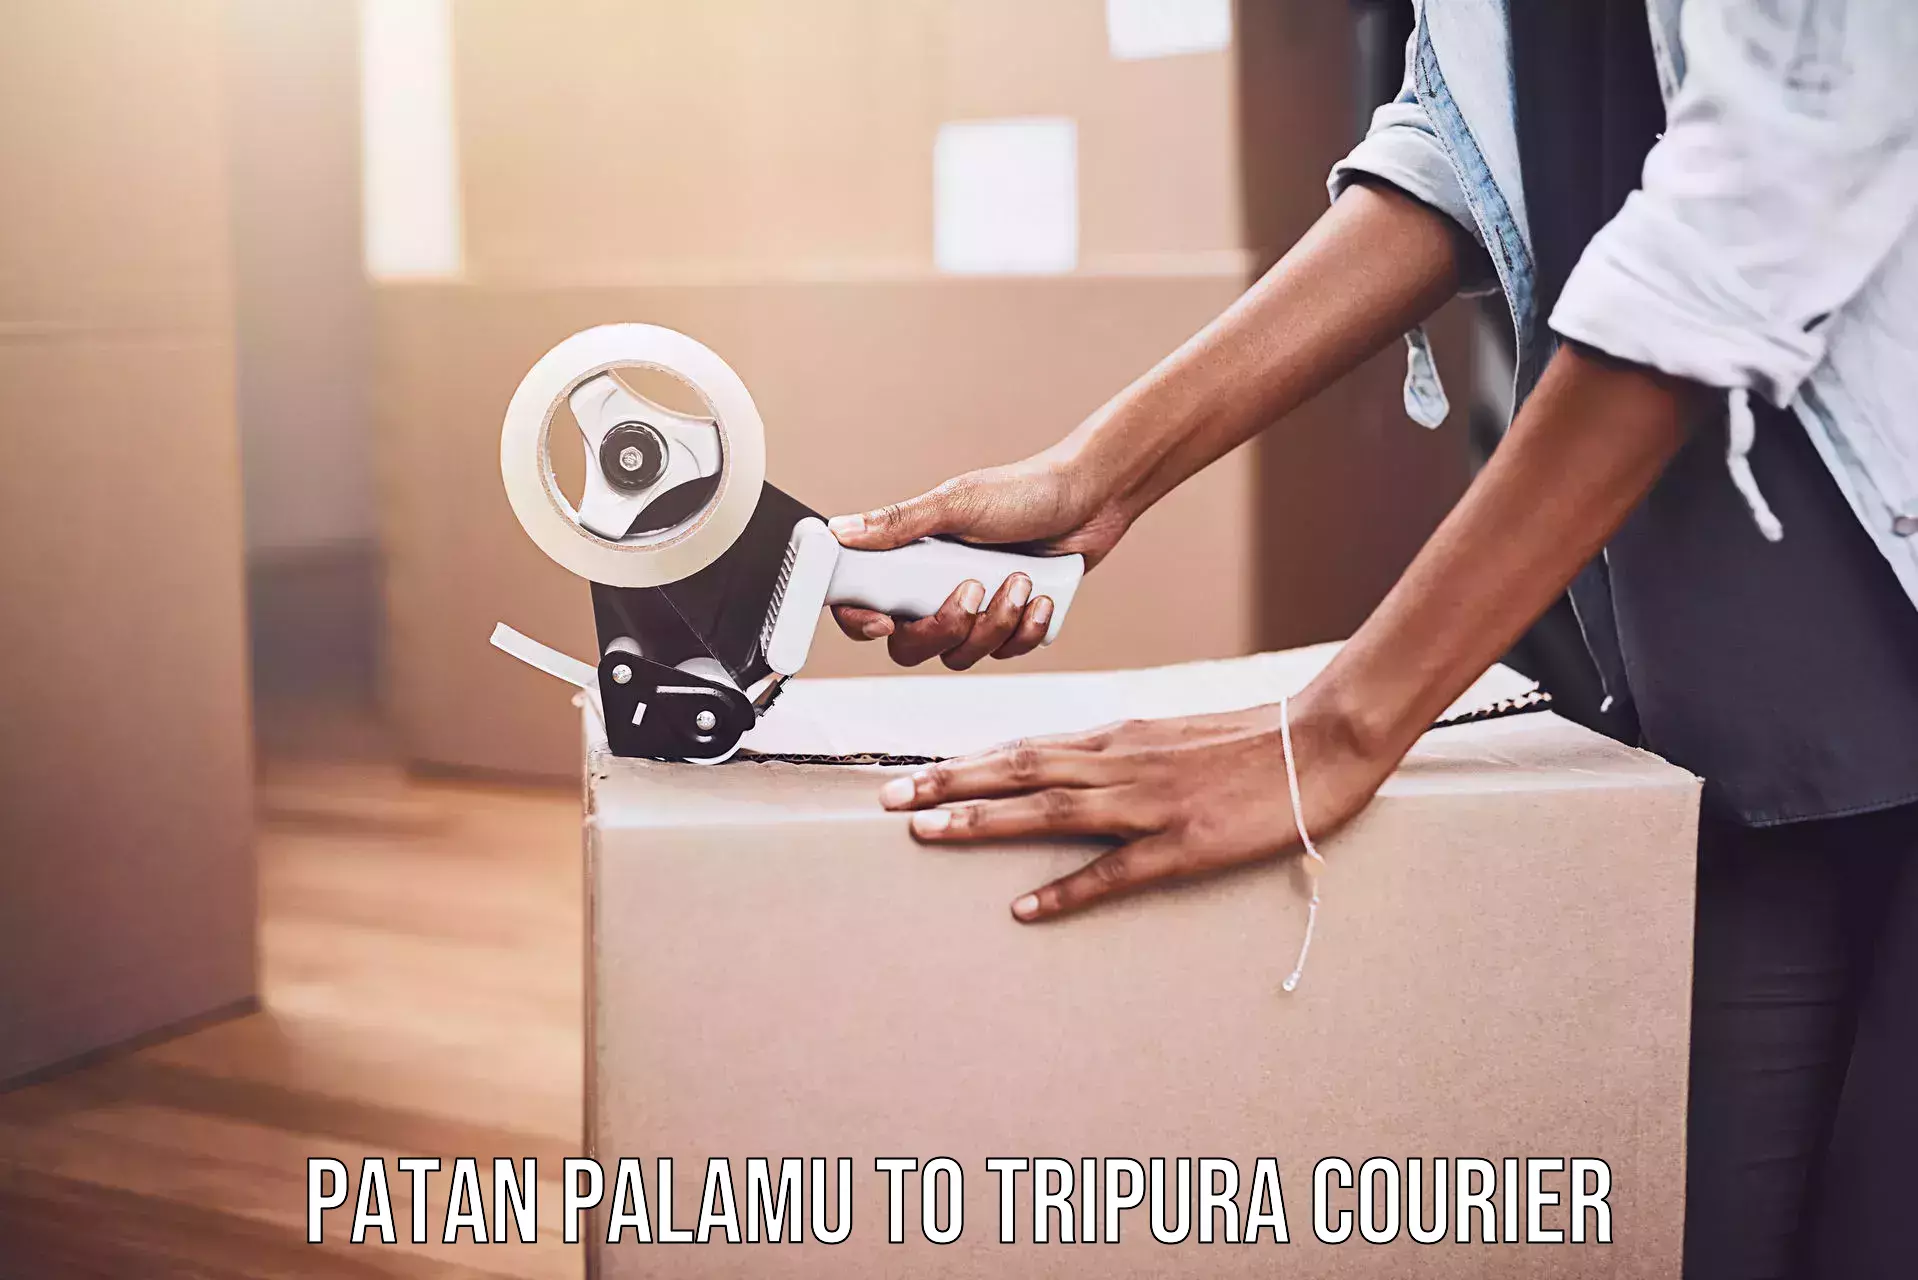 Bulk courier orders in Patan Palamu to Amarpur